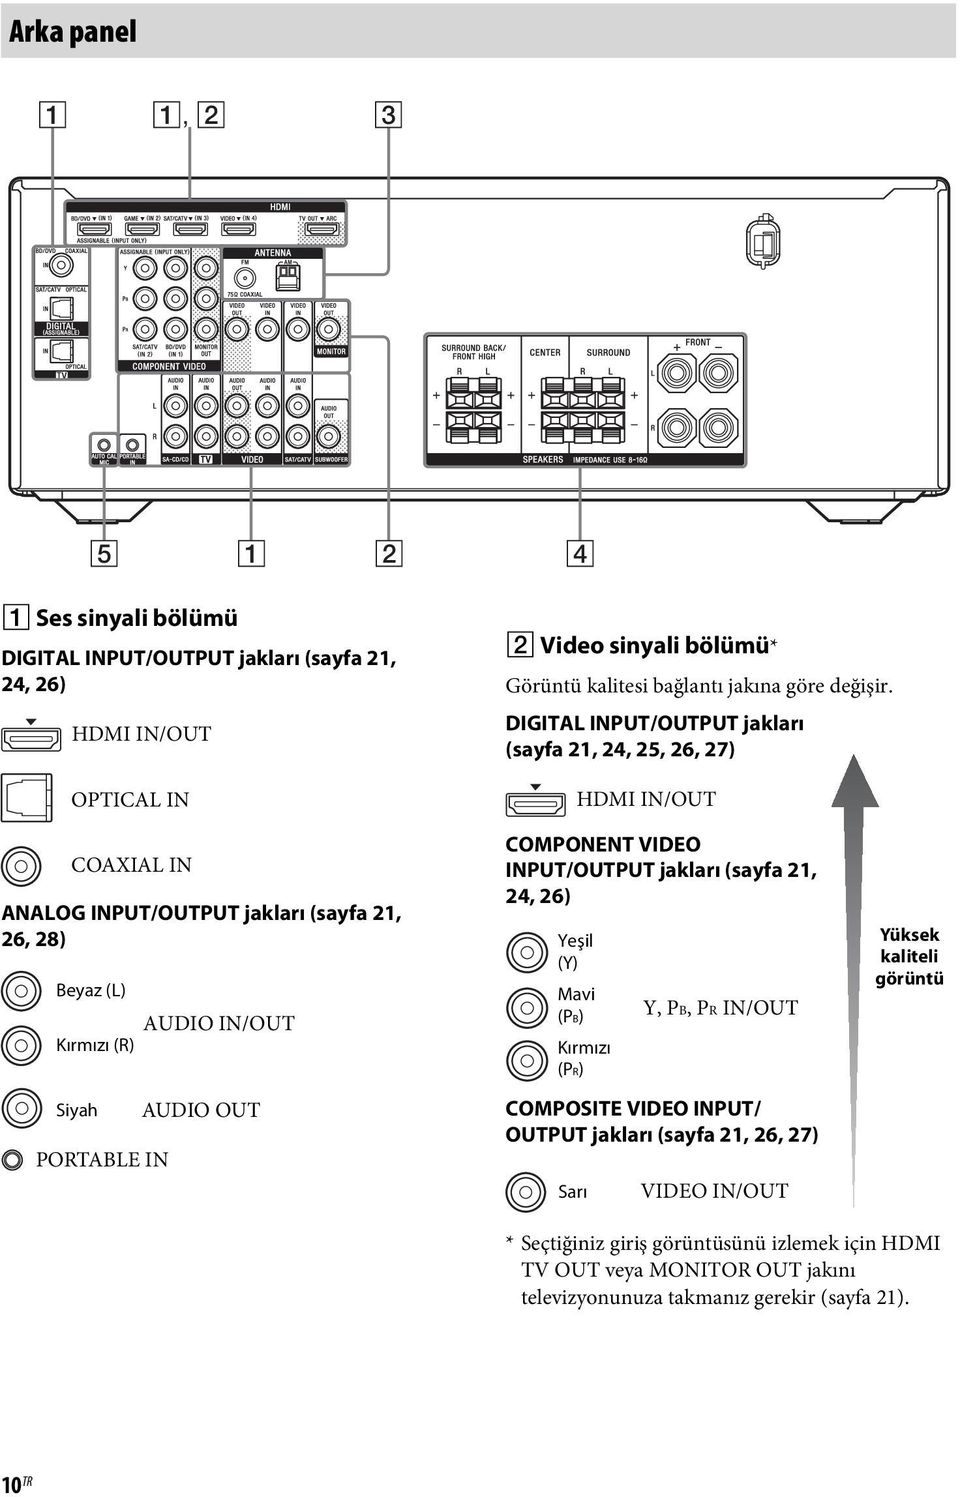 DIGITAL INPUT/OUTPUT jakları (sayfa 21, 24, 25, 26, 27) HDMI IN/OUT COAXIAL IN ANALOG INPUT/OUTPUT jakları (sayfa 21, 26, 28) Beyaz (L) AUDIO IN/OUT Kırmızı (R) Siyah PORTABLE IN